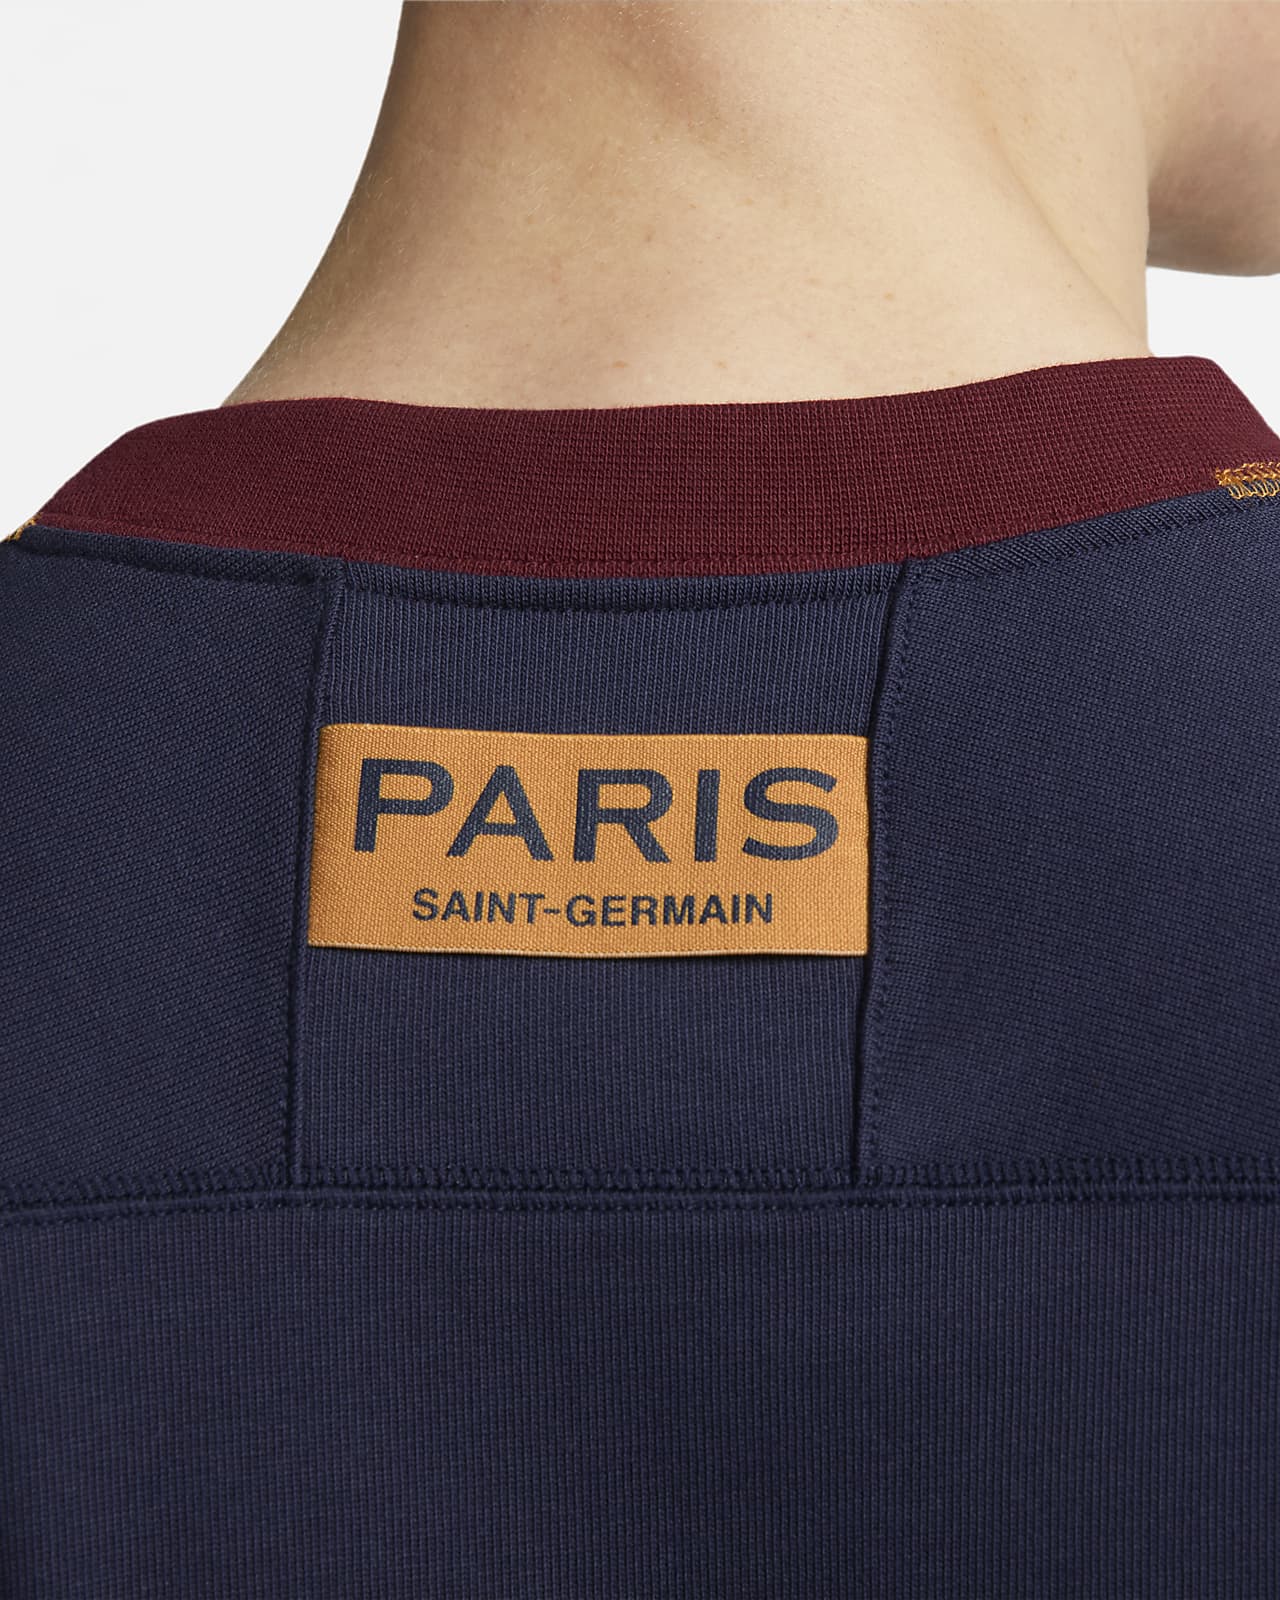 Serviette Nike Paris Saint germain / PSG (50 x 100 cm)